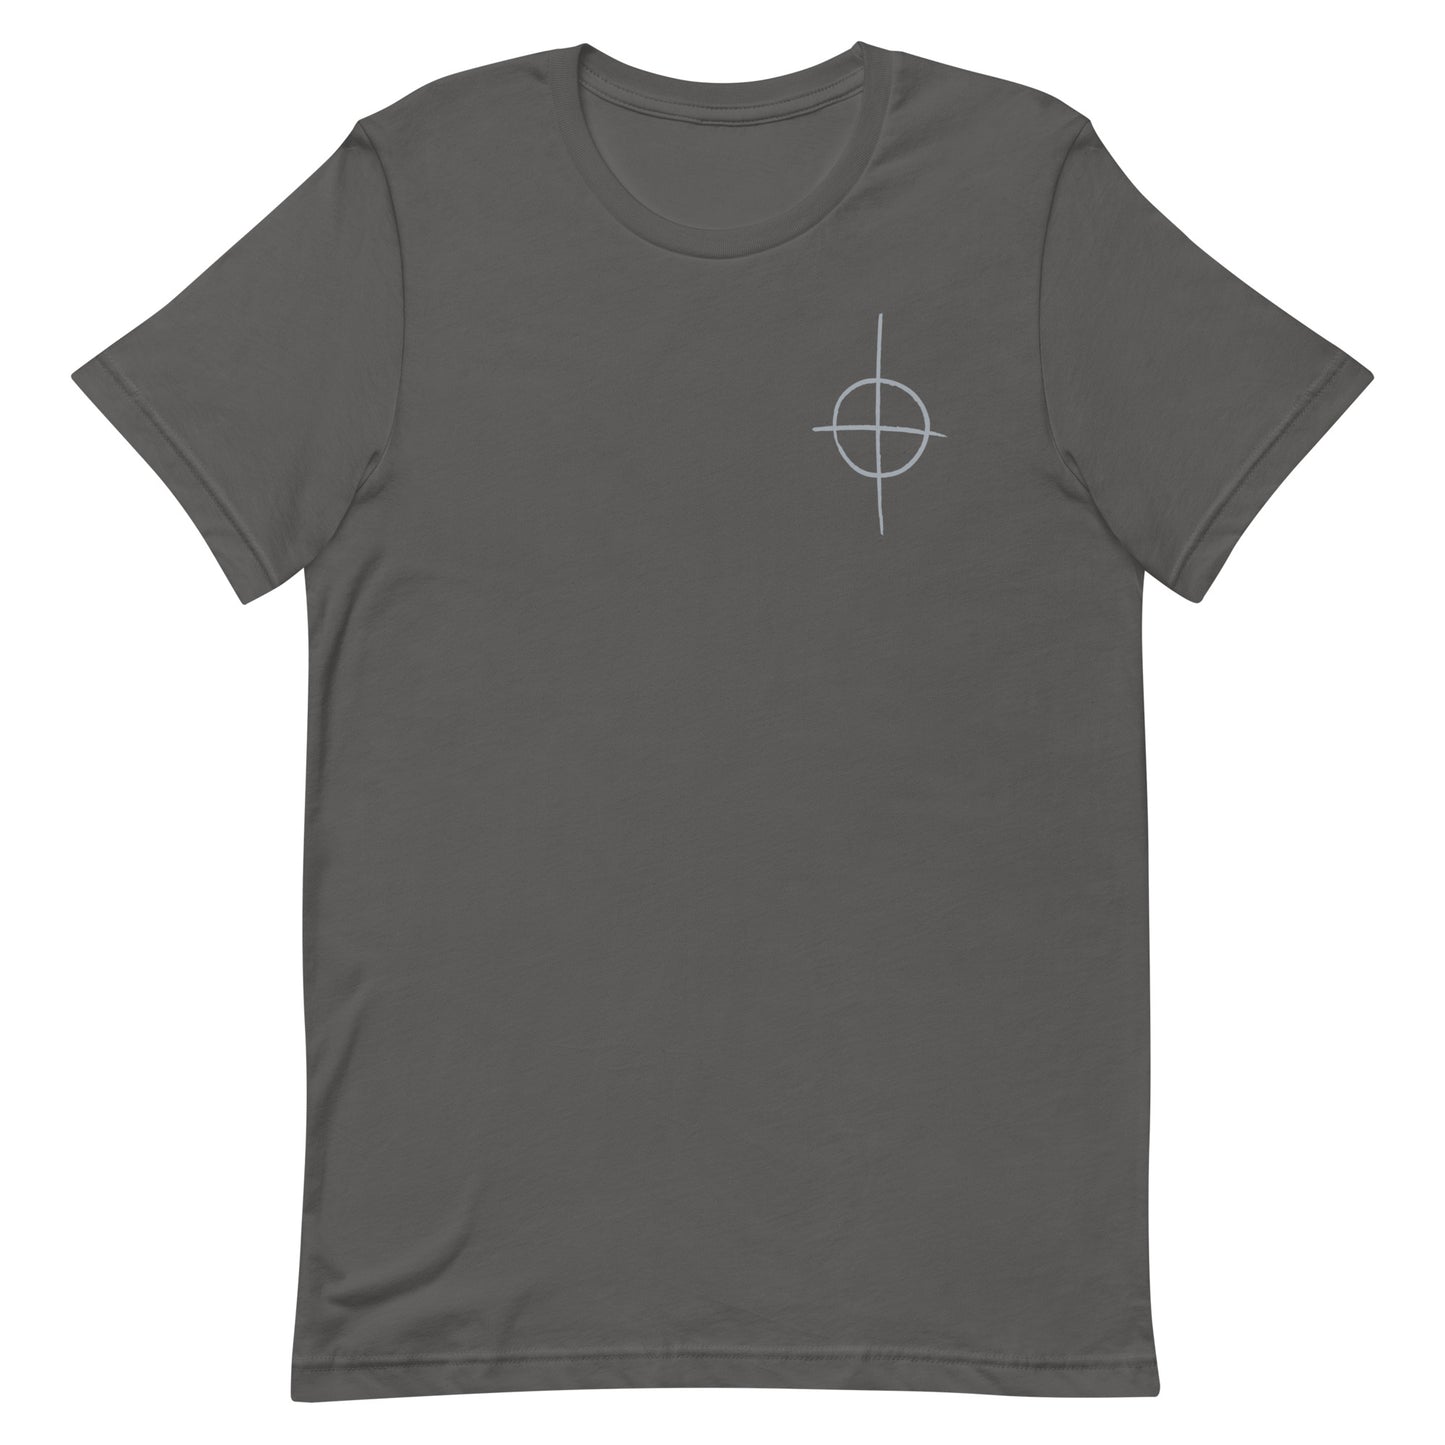 Clone T-shirt - Imperial Crosshair